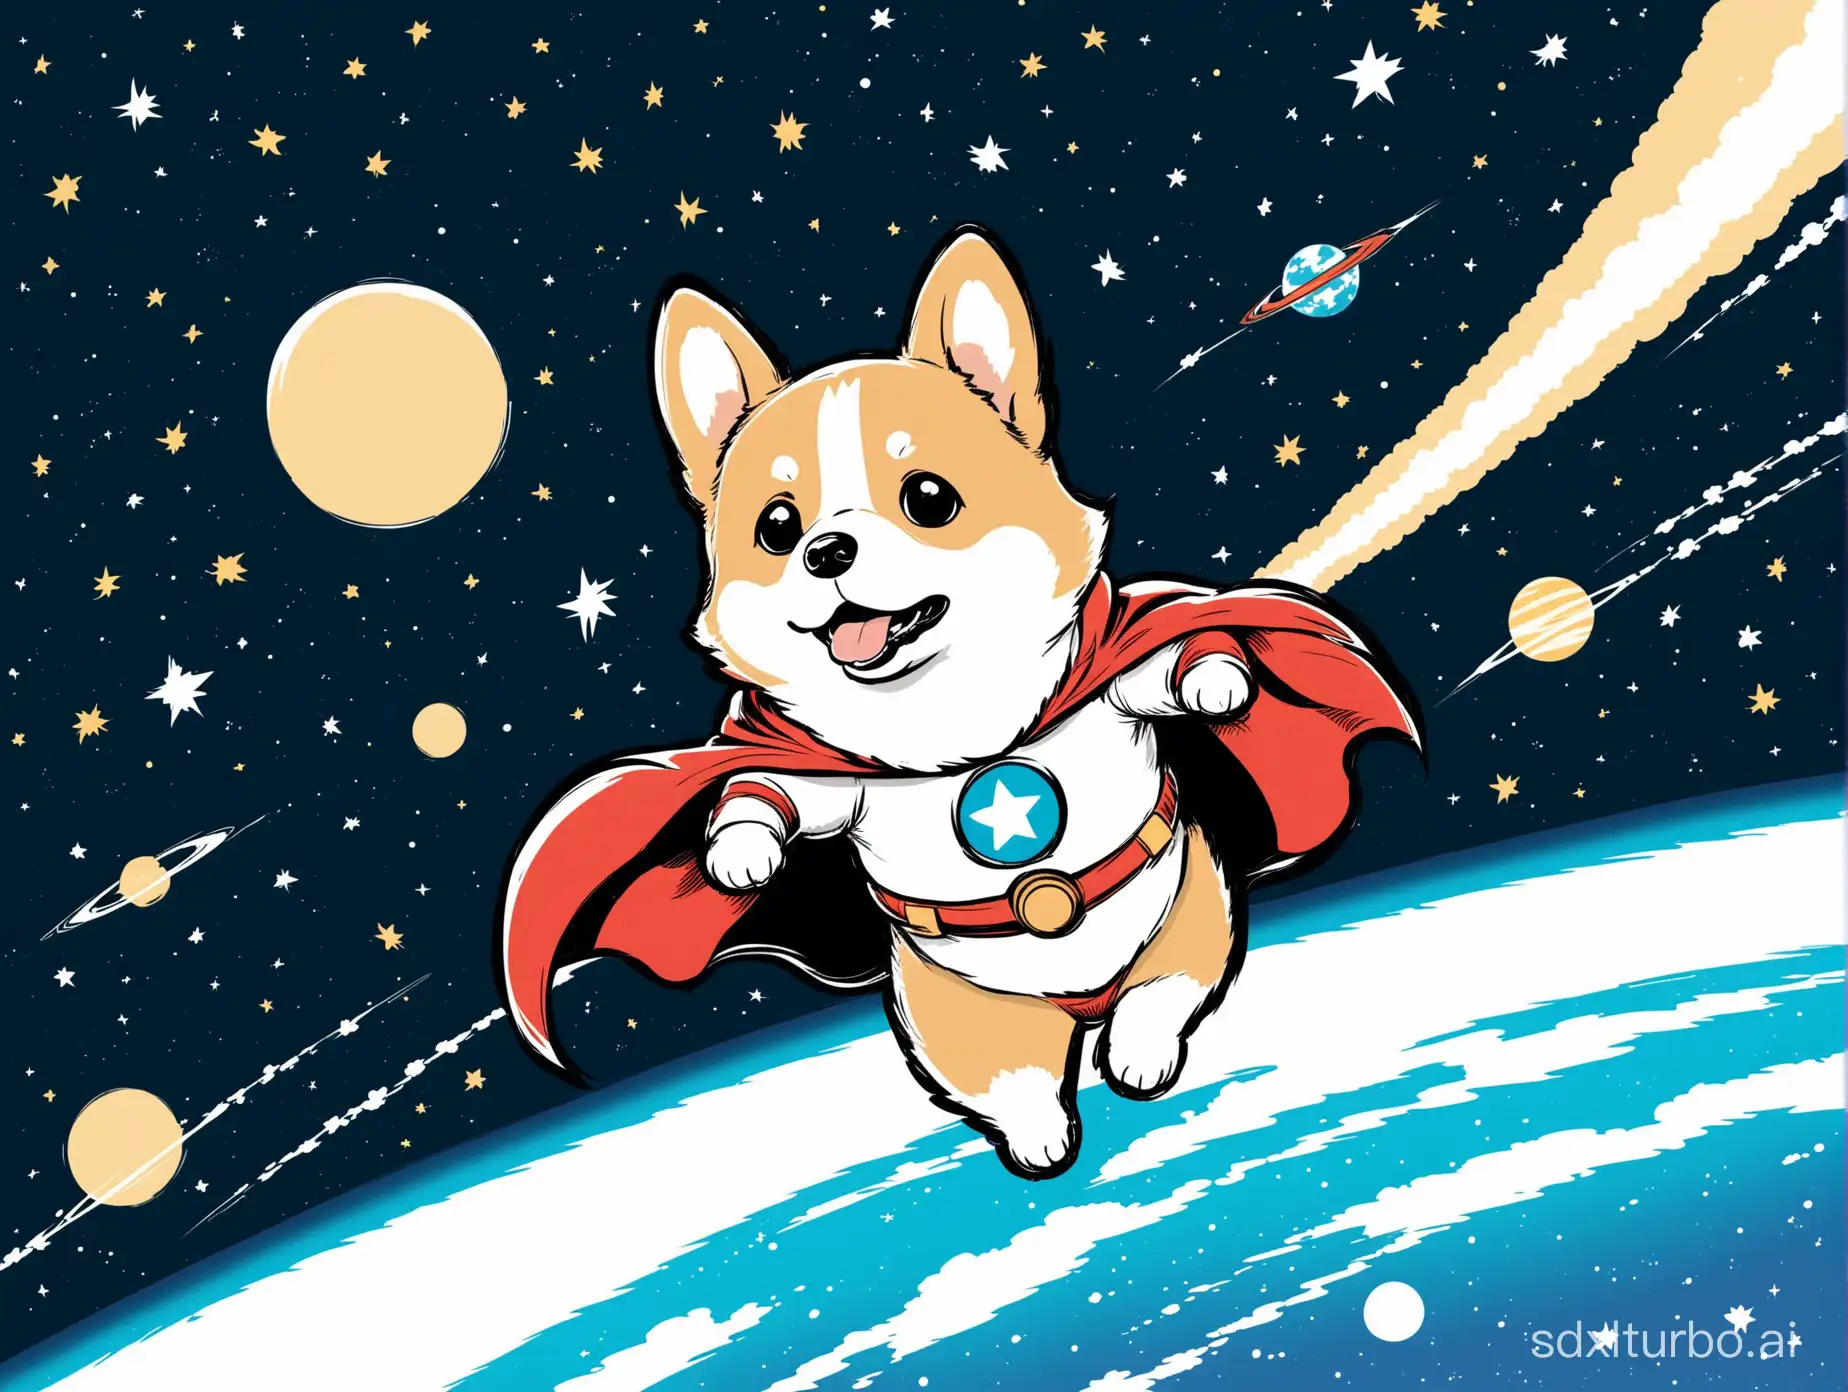 一个柯基超人，在太空巡查守护宇宙安全。极简主义日本漫画风格，简笔画风格。